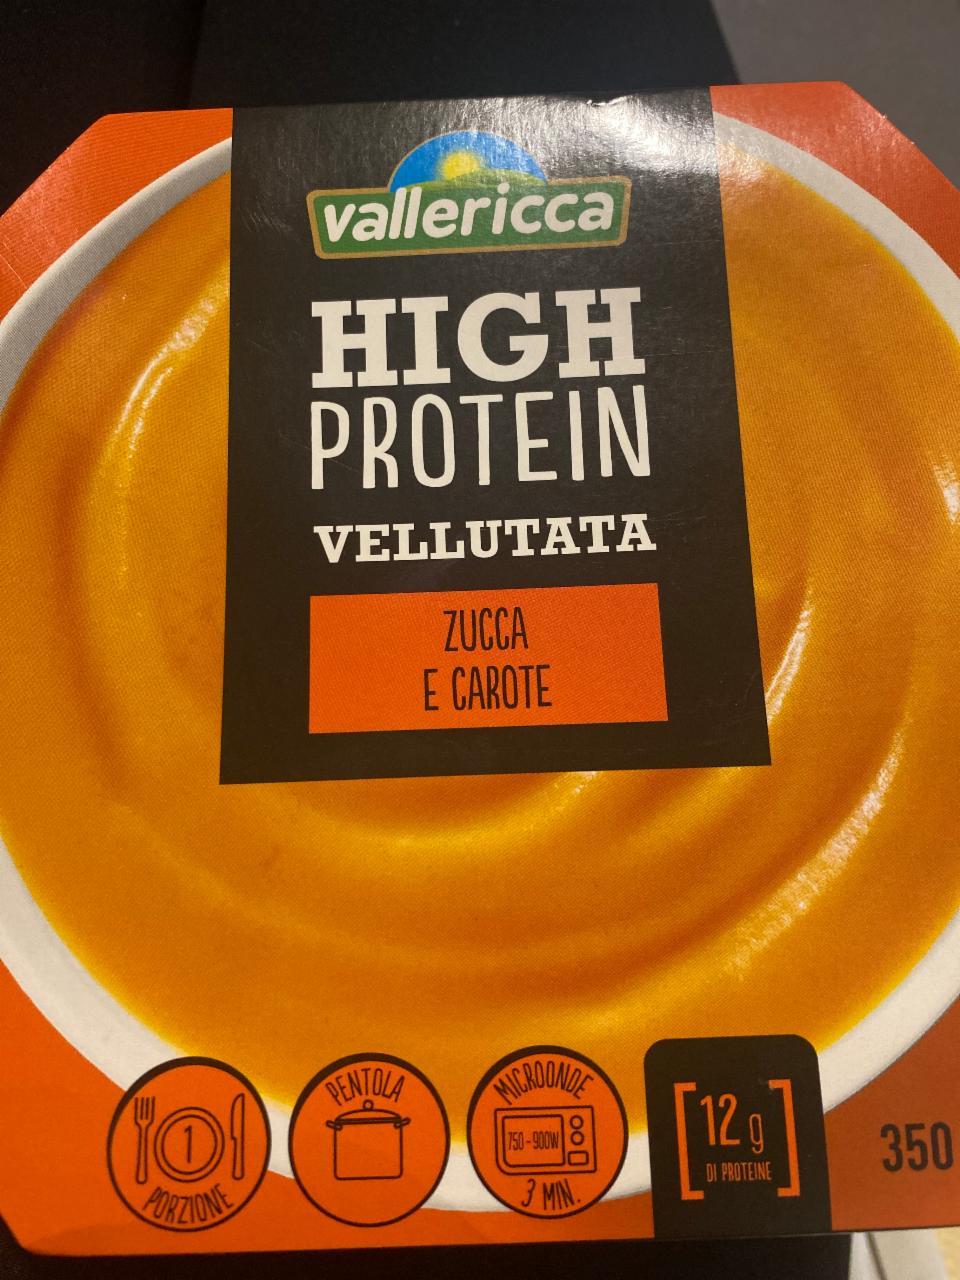 Fotografie - High protein vellutata di zucca e carote Vallericca